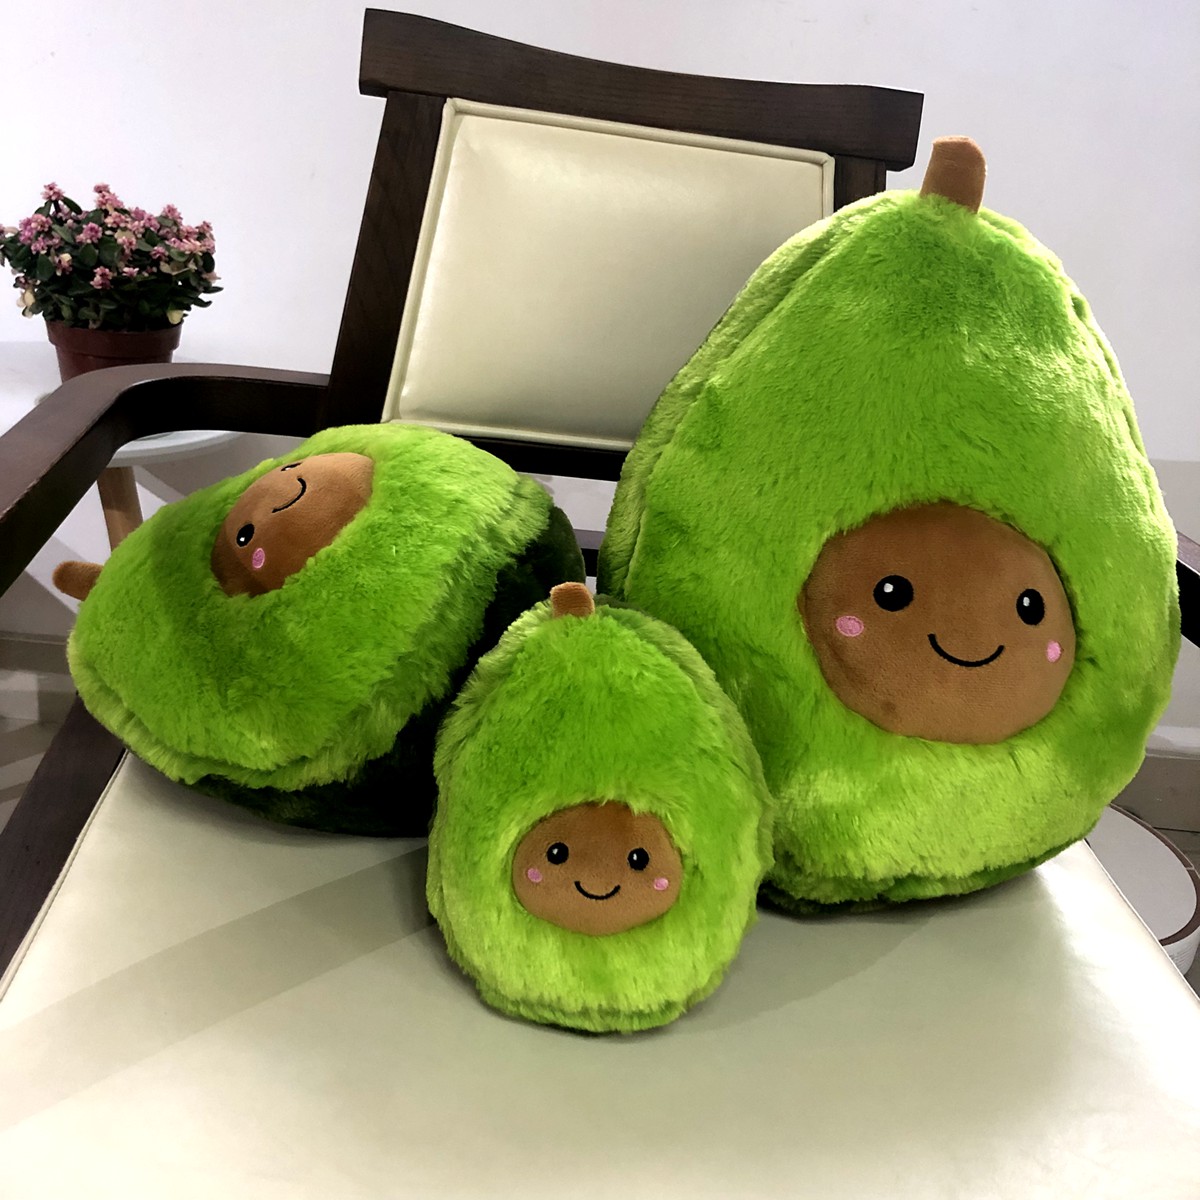 soft plush avocado toy 